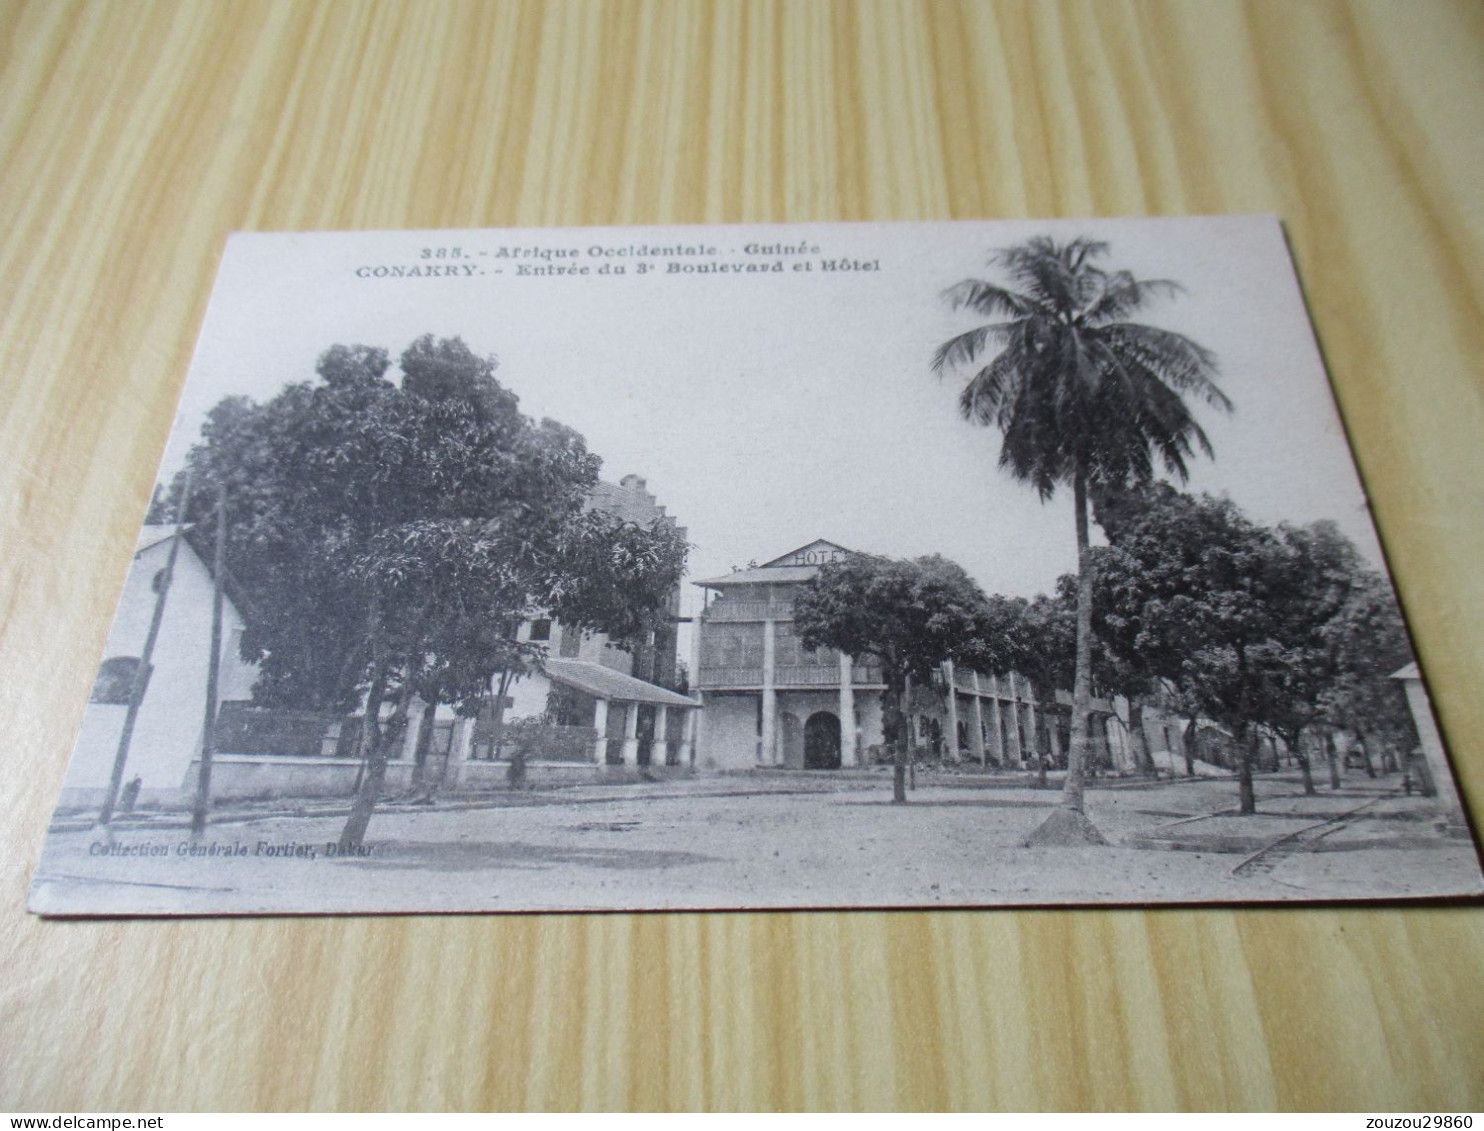 CPA Conakry (Guinée).Entrée Du 3e Boulevard Et Hôtel. - Guinée